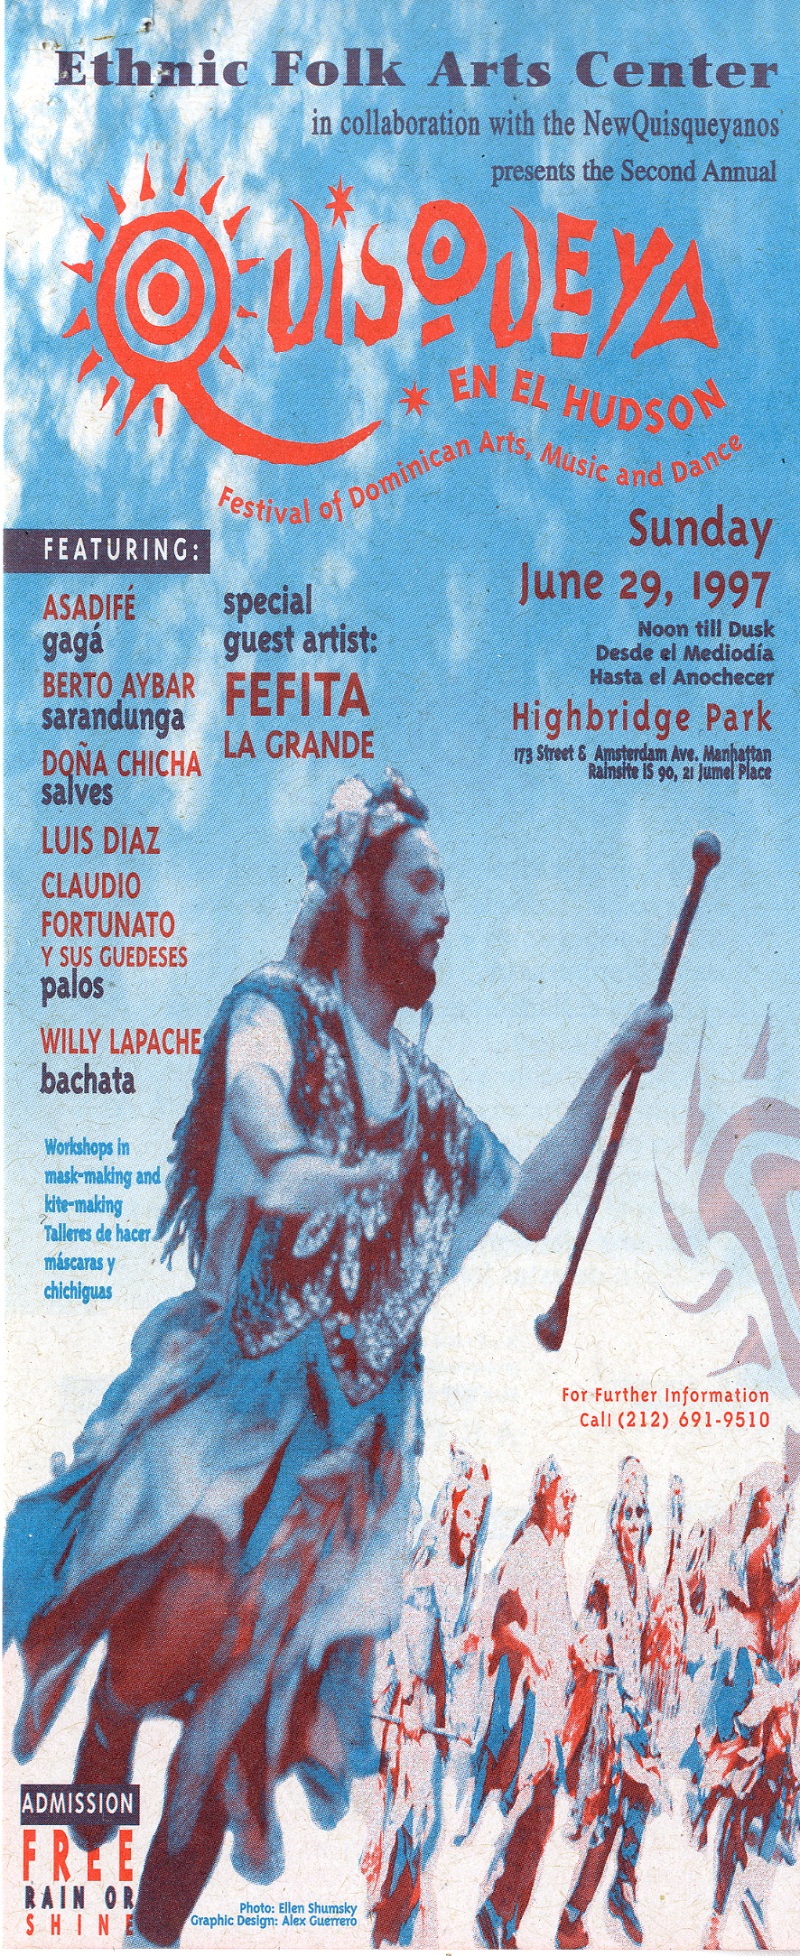 Quisqueya en el Hudson Event Flyer, June 29, 1997